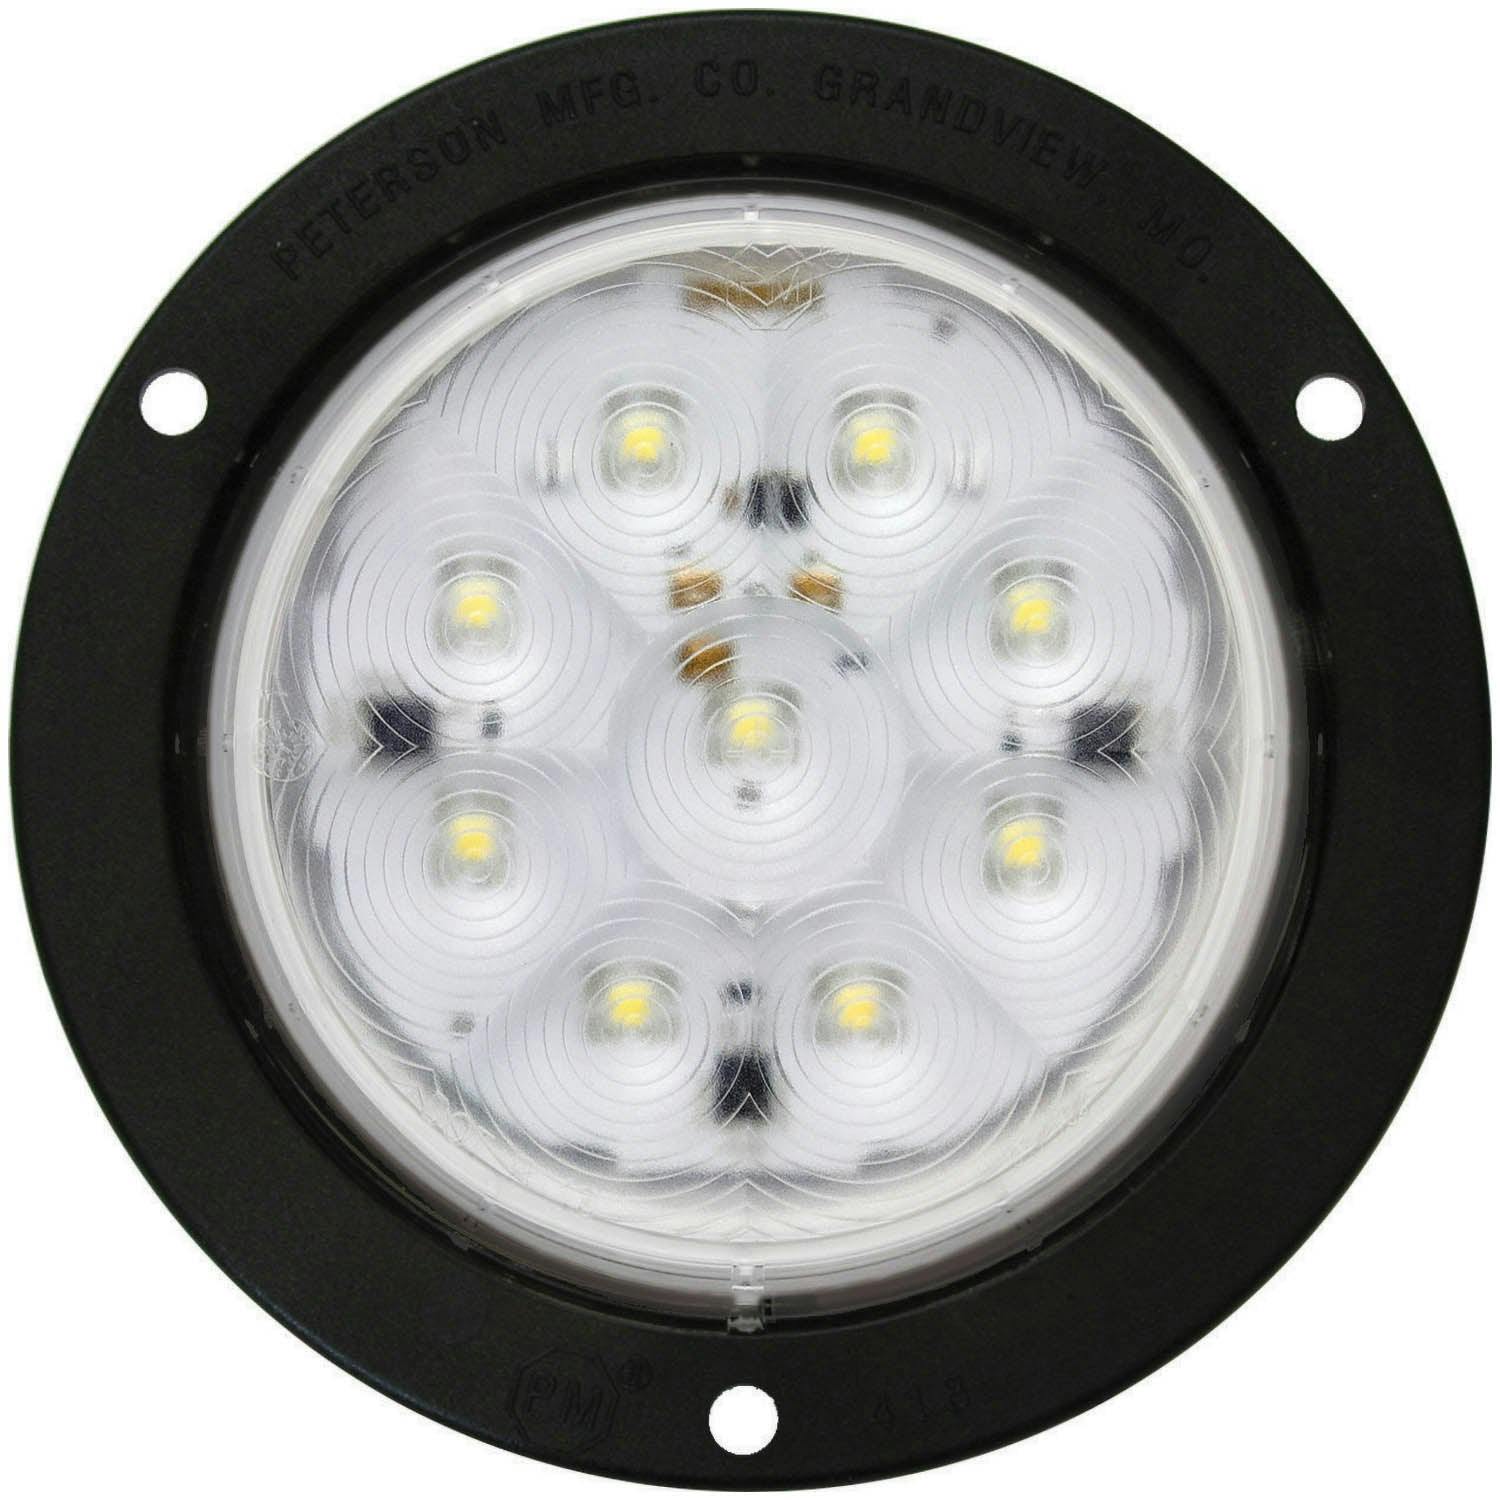 LED Work Light, Round, Flange-Mount 4", white, mfg pack (Pack of 50) - 818W-9